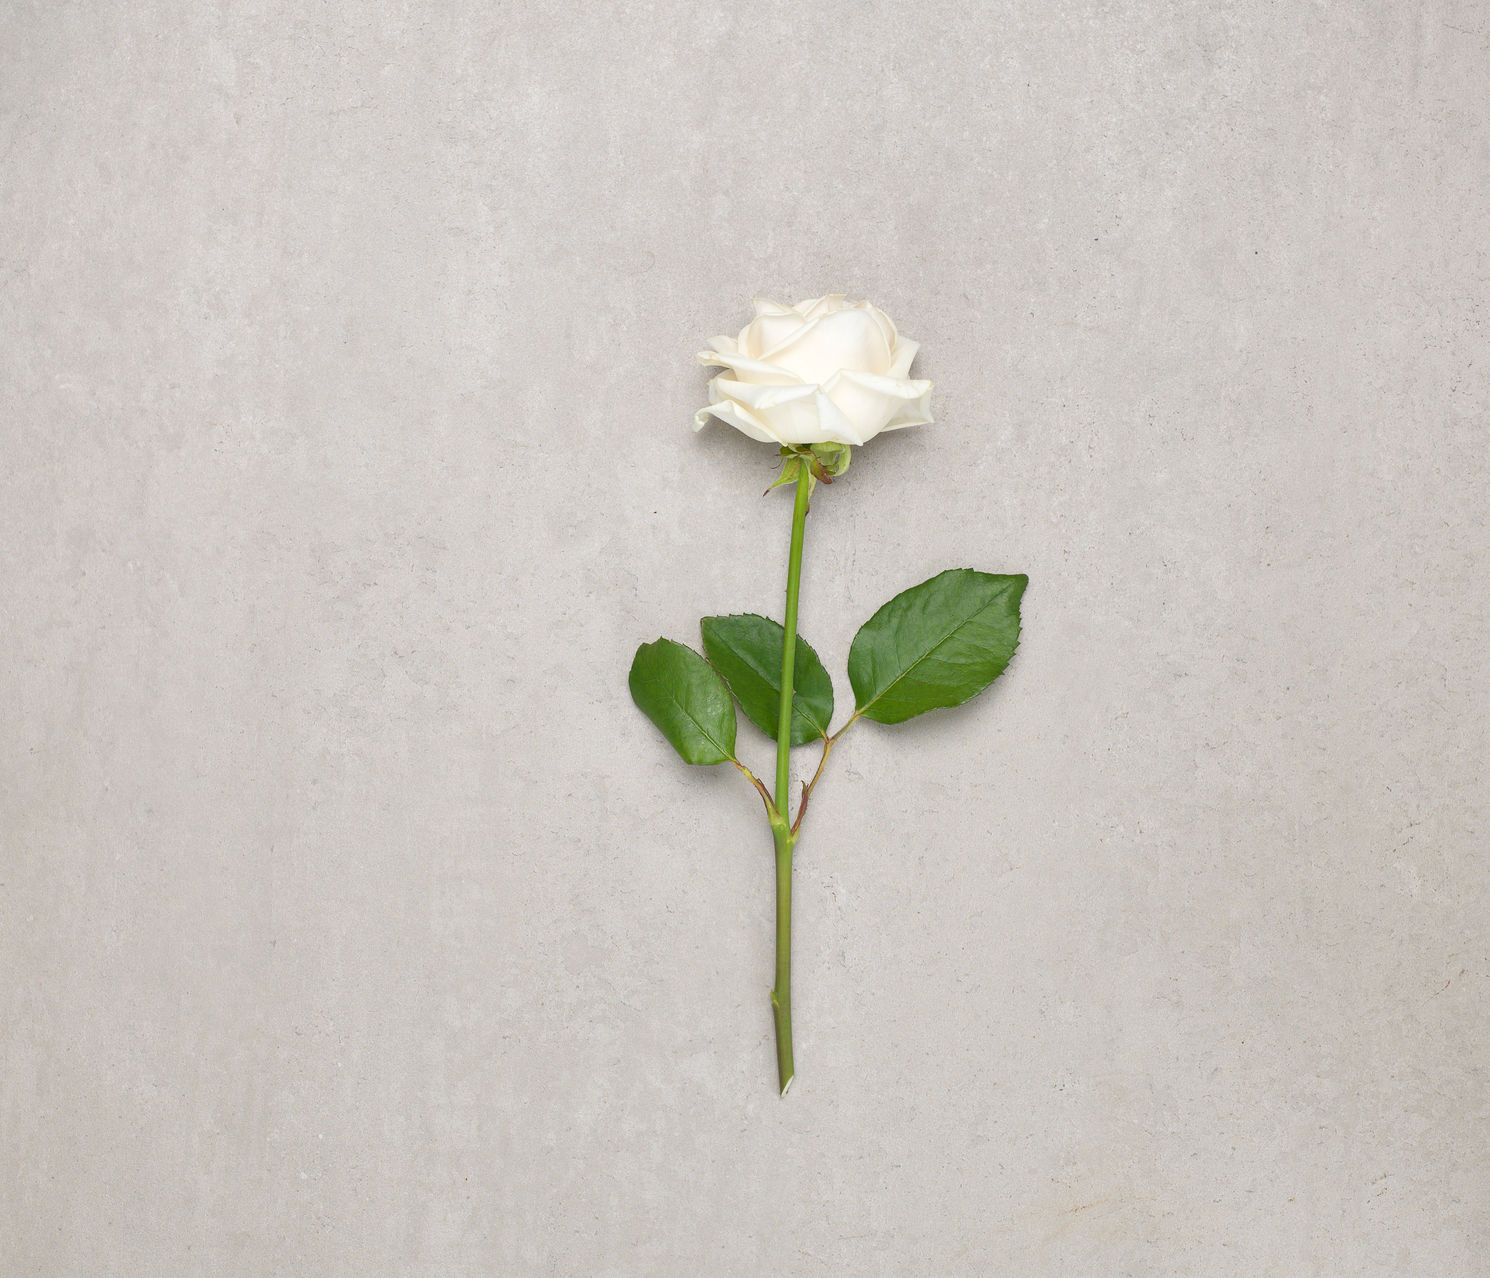 róża biała